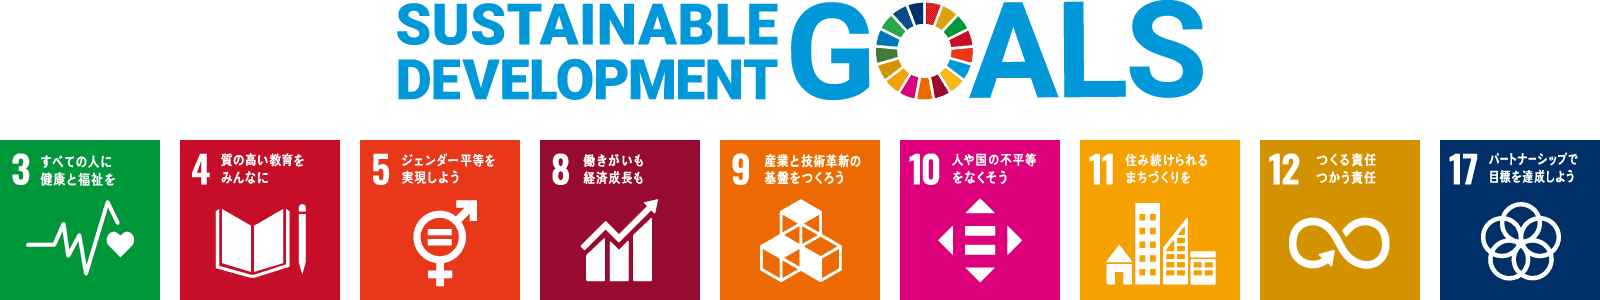 昭和印刷株式会社は持続可能な開発目標（SDGs）を支援しています